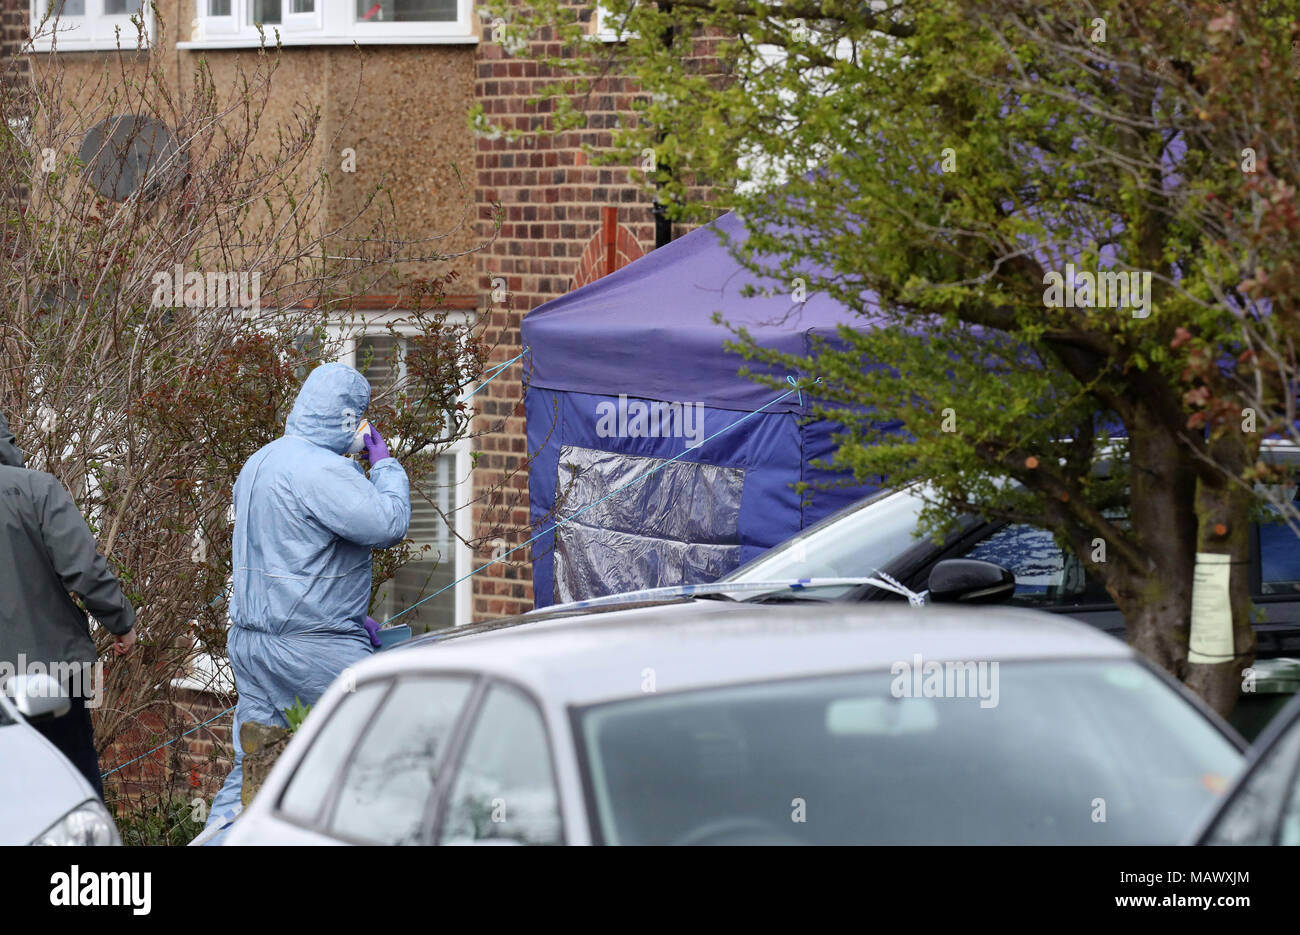 Une expertise médico-légale tente sur la Route verte de plus ici en vert, Londres, après un pensionné a été arrêté, soupçonné de meurtre après avoir mortellement blessé un intrus lors d'un cambriolage suspect à son domicile. Banque D'Images